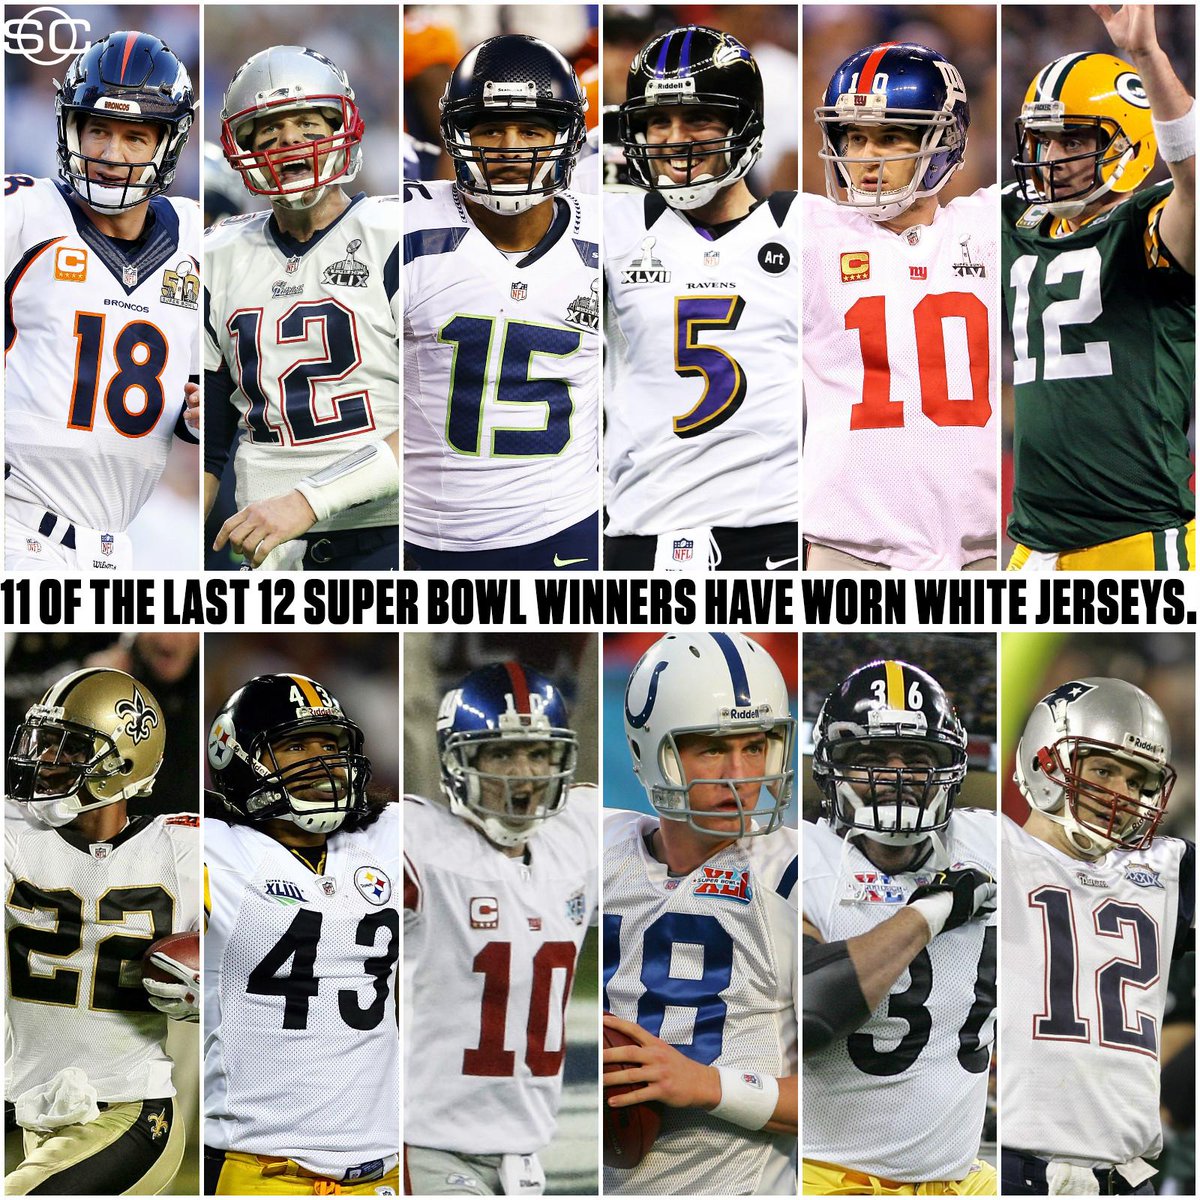 wear white jerseys in Super Bowl LI 